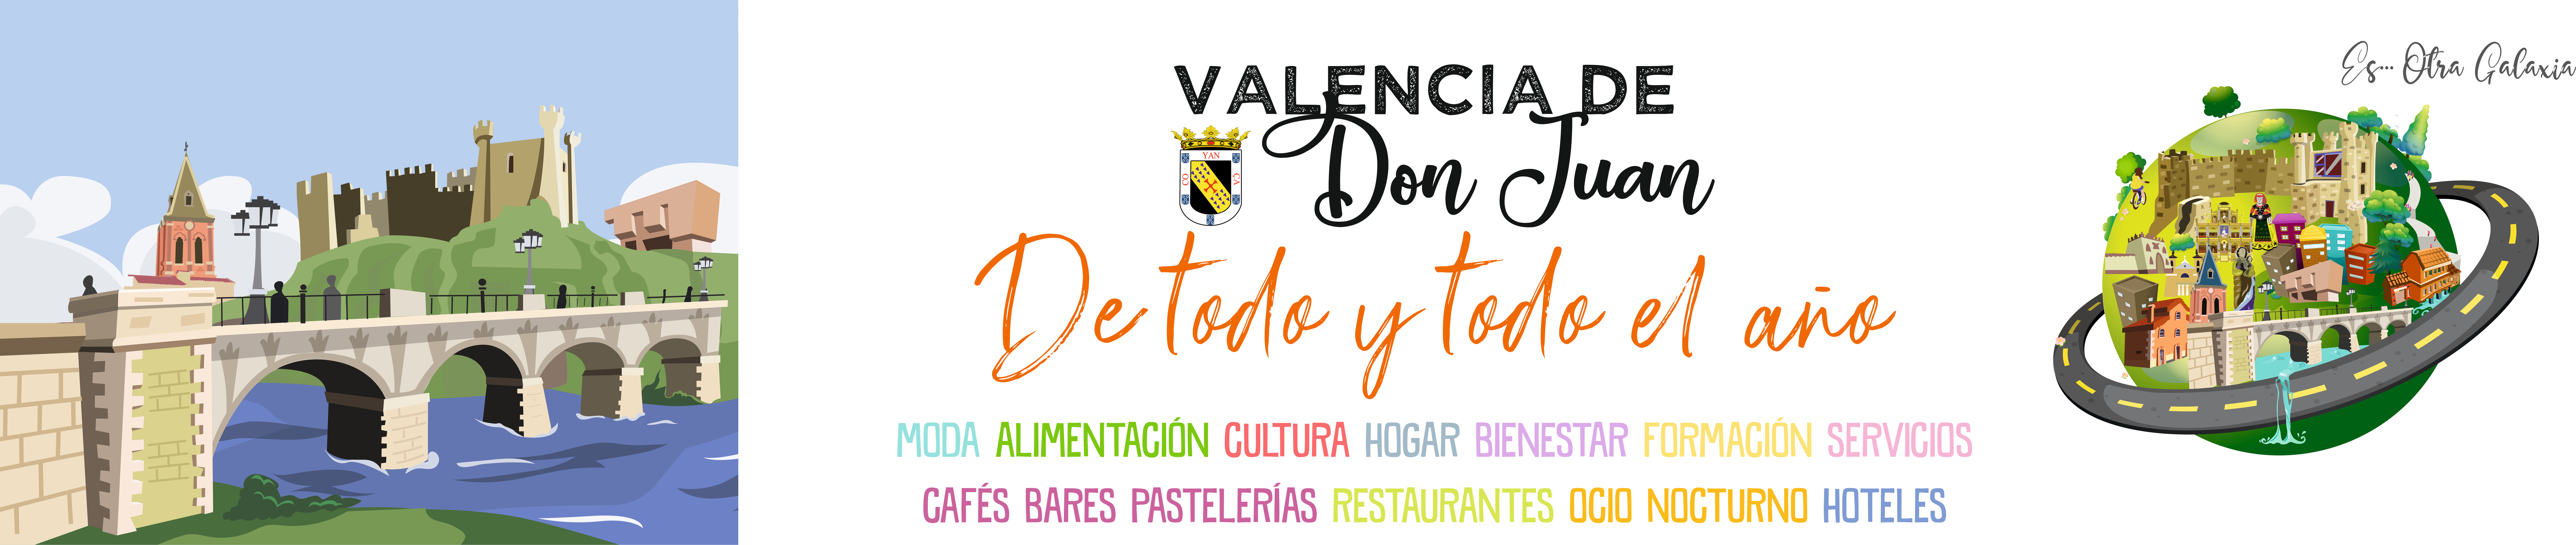 Valencia-De-Don-Juan-Postales-De-Todo-Y-Todo-El-Año-Web-JPG